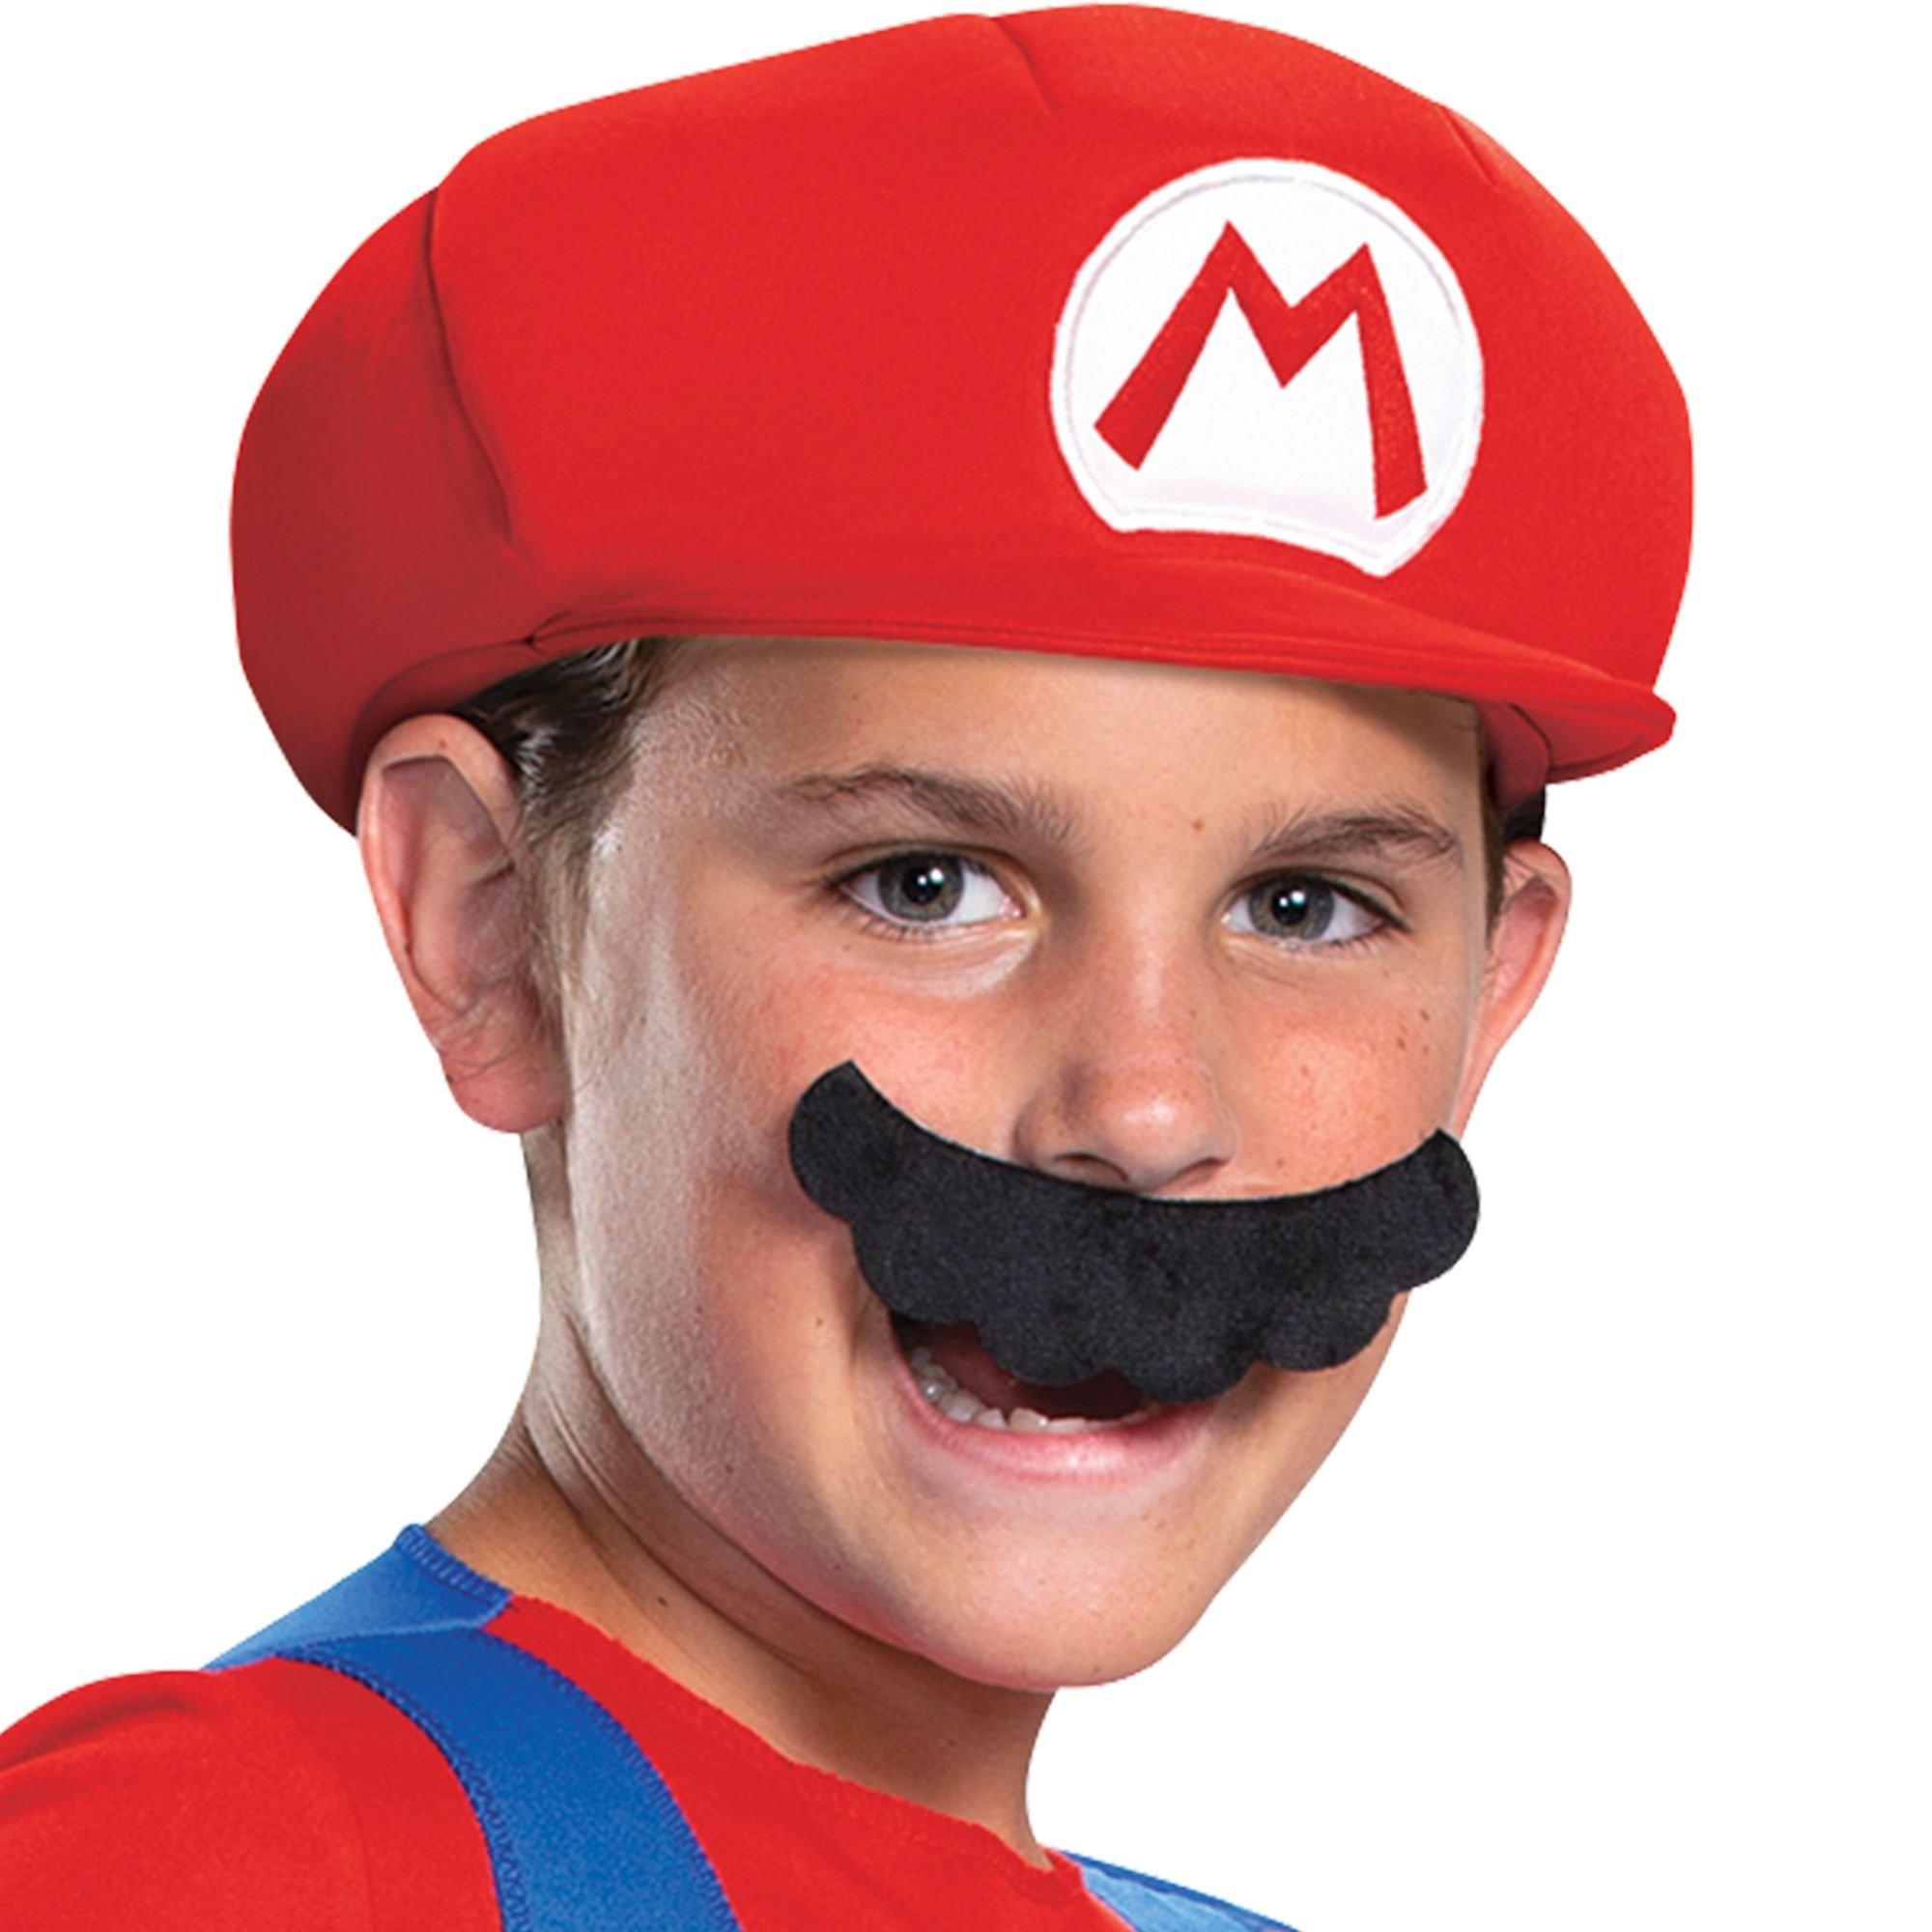 Déguisement Mario™ Deluxe Enfant